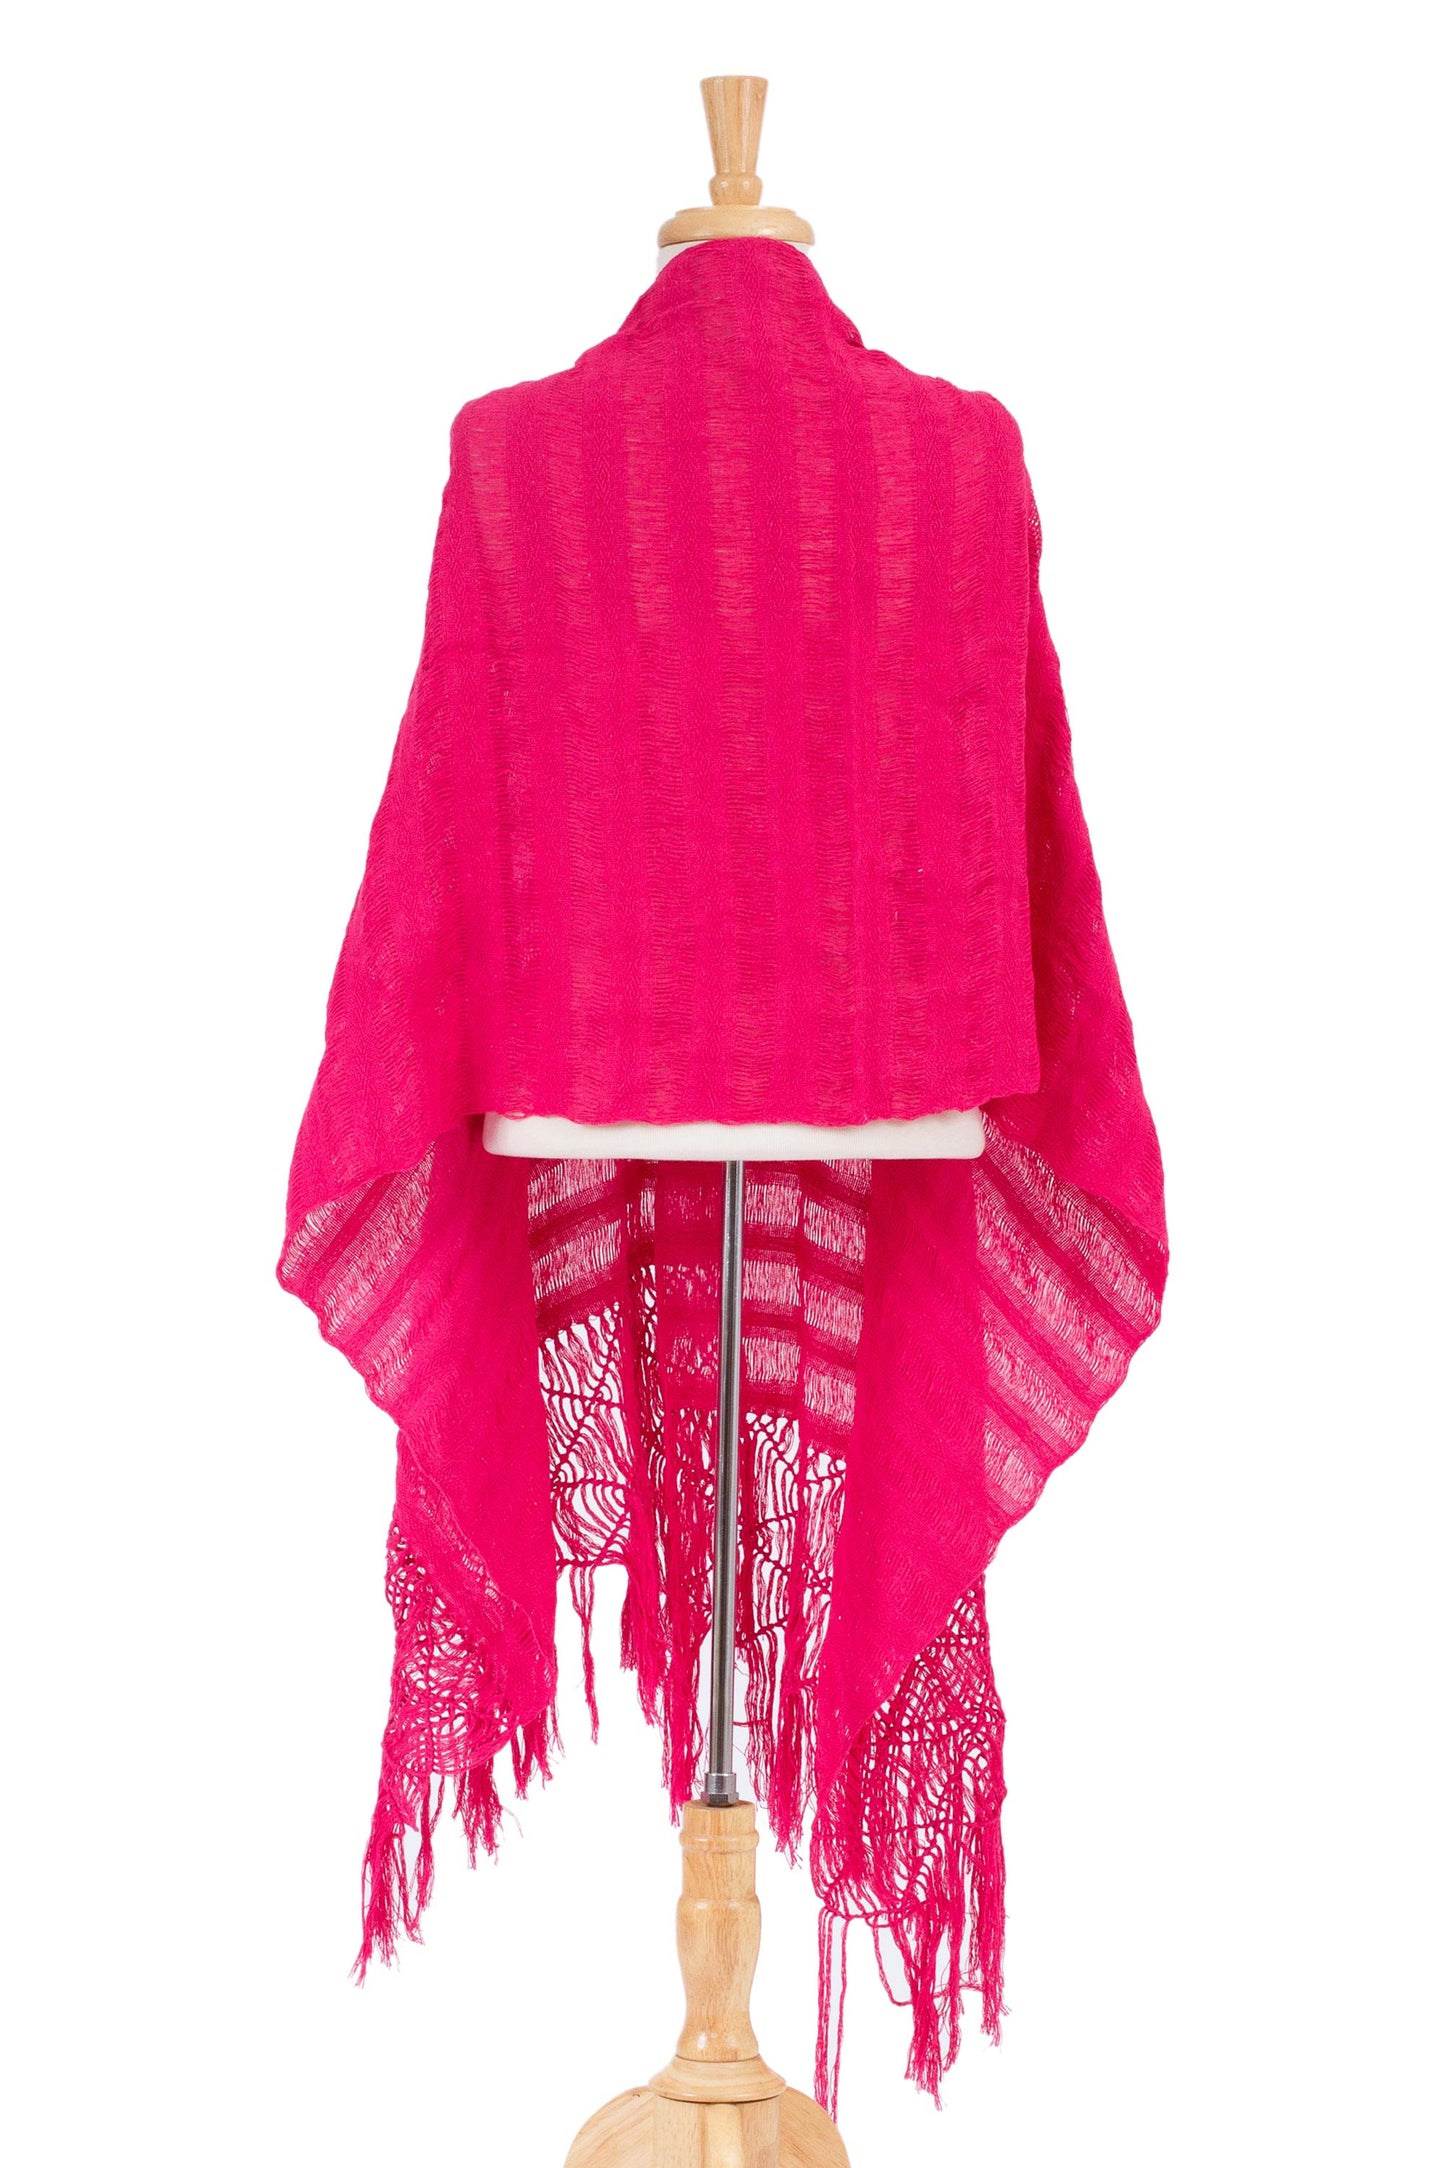 Cotton rebozo shawl, 'Oaxaca Happiness'